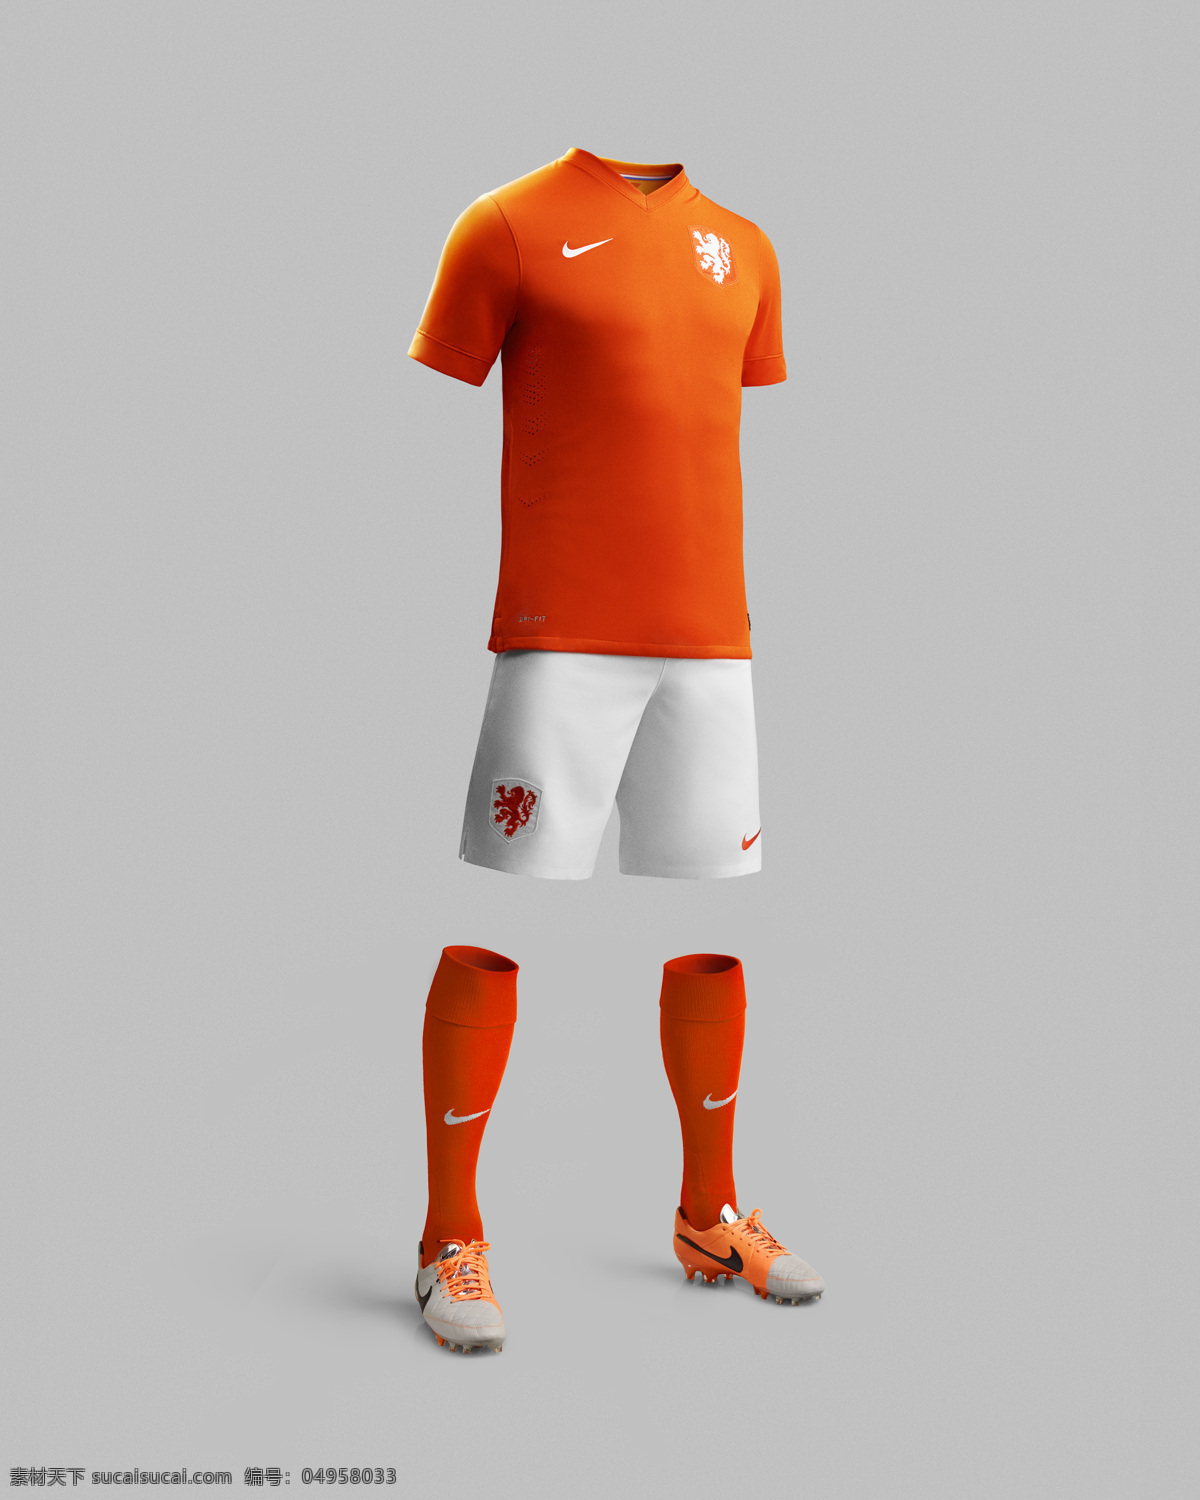 荷兰 国家队 队服 广告 nike 体育运动 文化艺术